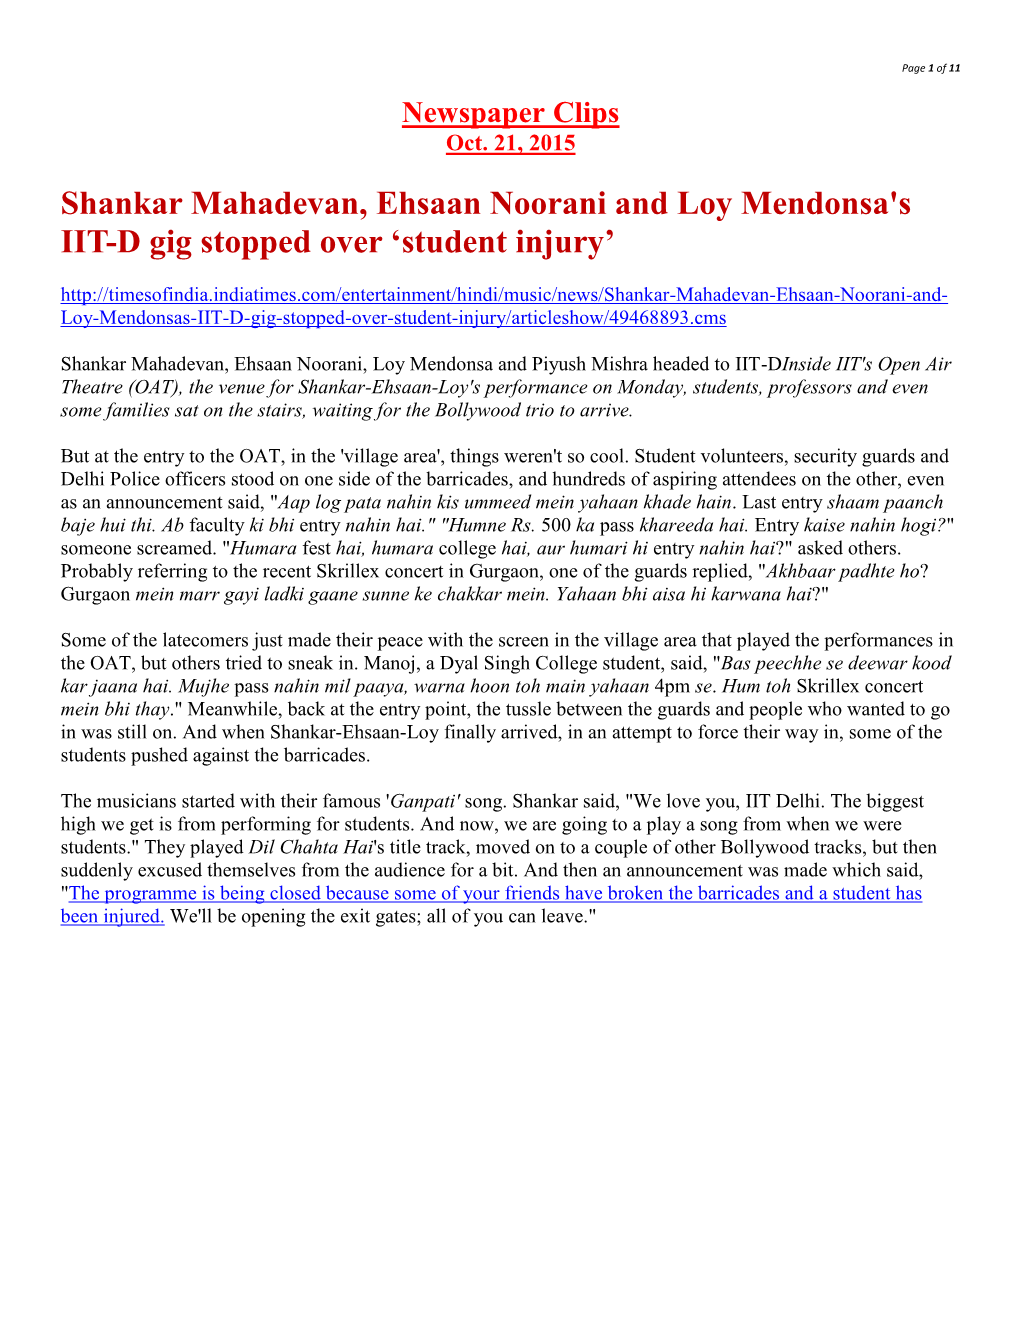 Shankar Mahadevan, Ehsaan Noorani and Loy Mendonsa's IIT-D Gig